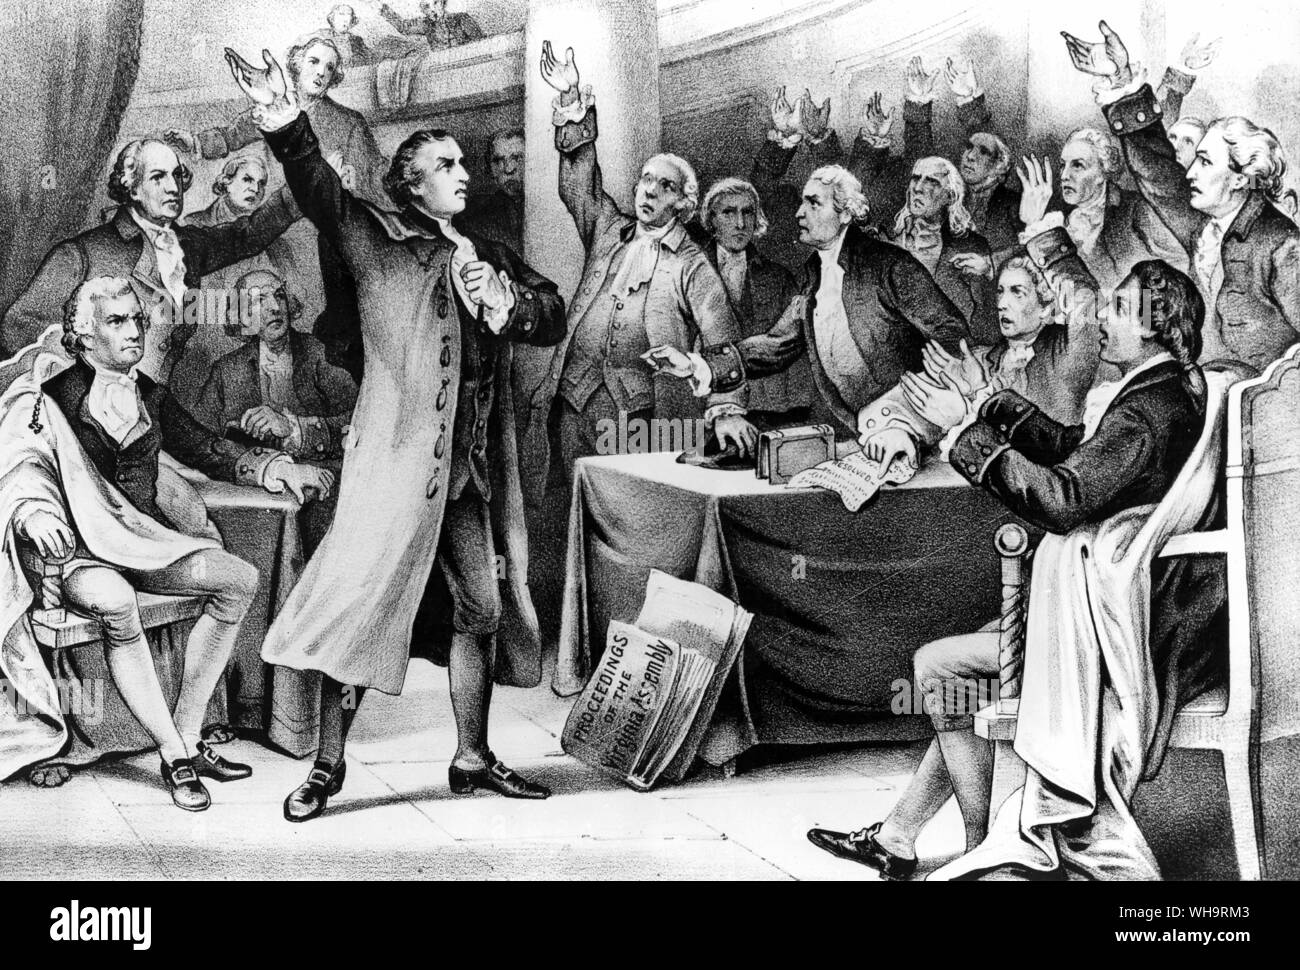 Mi danno la libertà, o mi danno la morte! Patrick Henry offrendo il suo grande discorso sui diritti delle colonie prima della Virginia covened Gruppo a marzo 23rd, 1775. Concludendo con il sentimento di cui sopra, che divenne il grido di guerra della Rivoluzione. Foto Stock